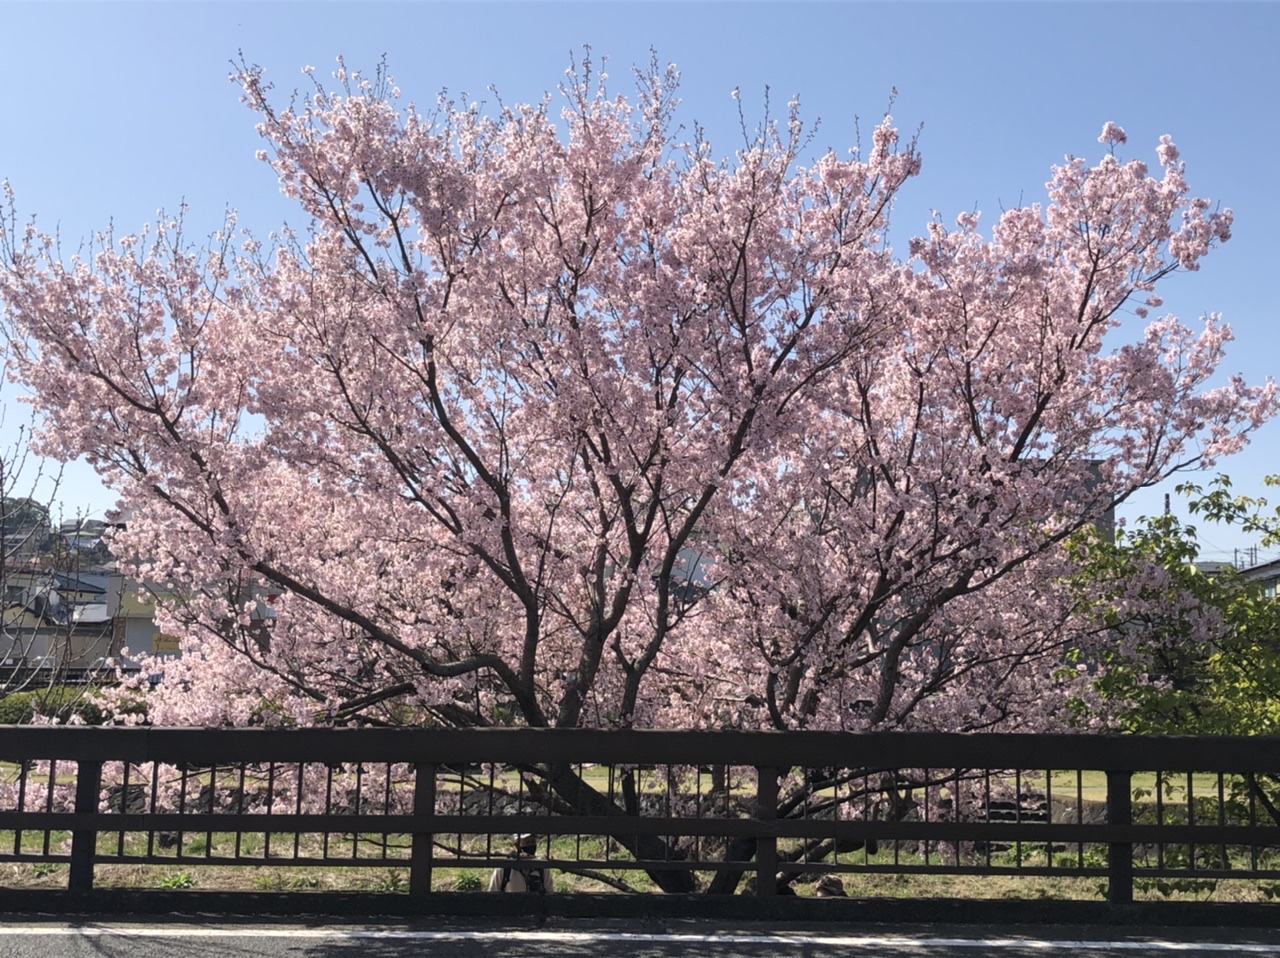 10:14
水無川沿いの桜
綺麗でデカイです